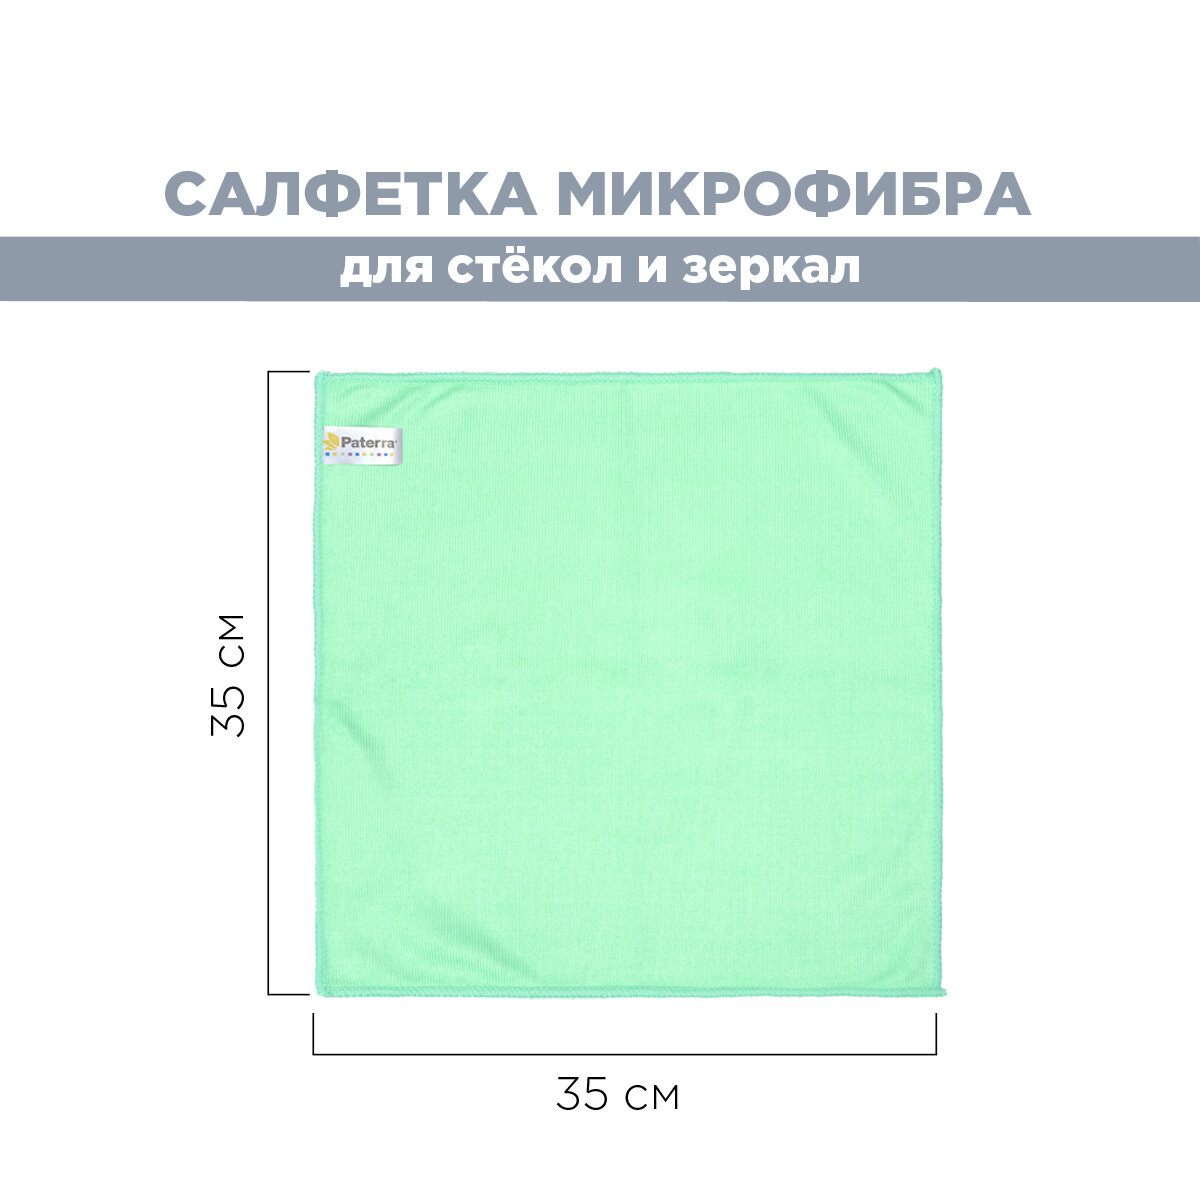 Салфетка микрофибра PROFESSIONAL, для стекол и зеркал, 35 * 35 см, в картонной упаковке, PATERRA (406-011)